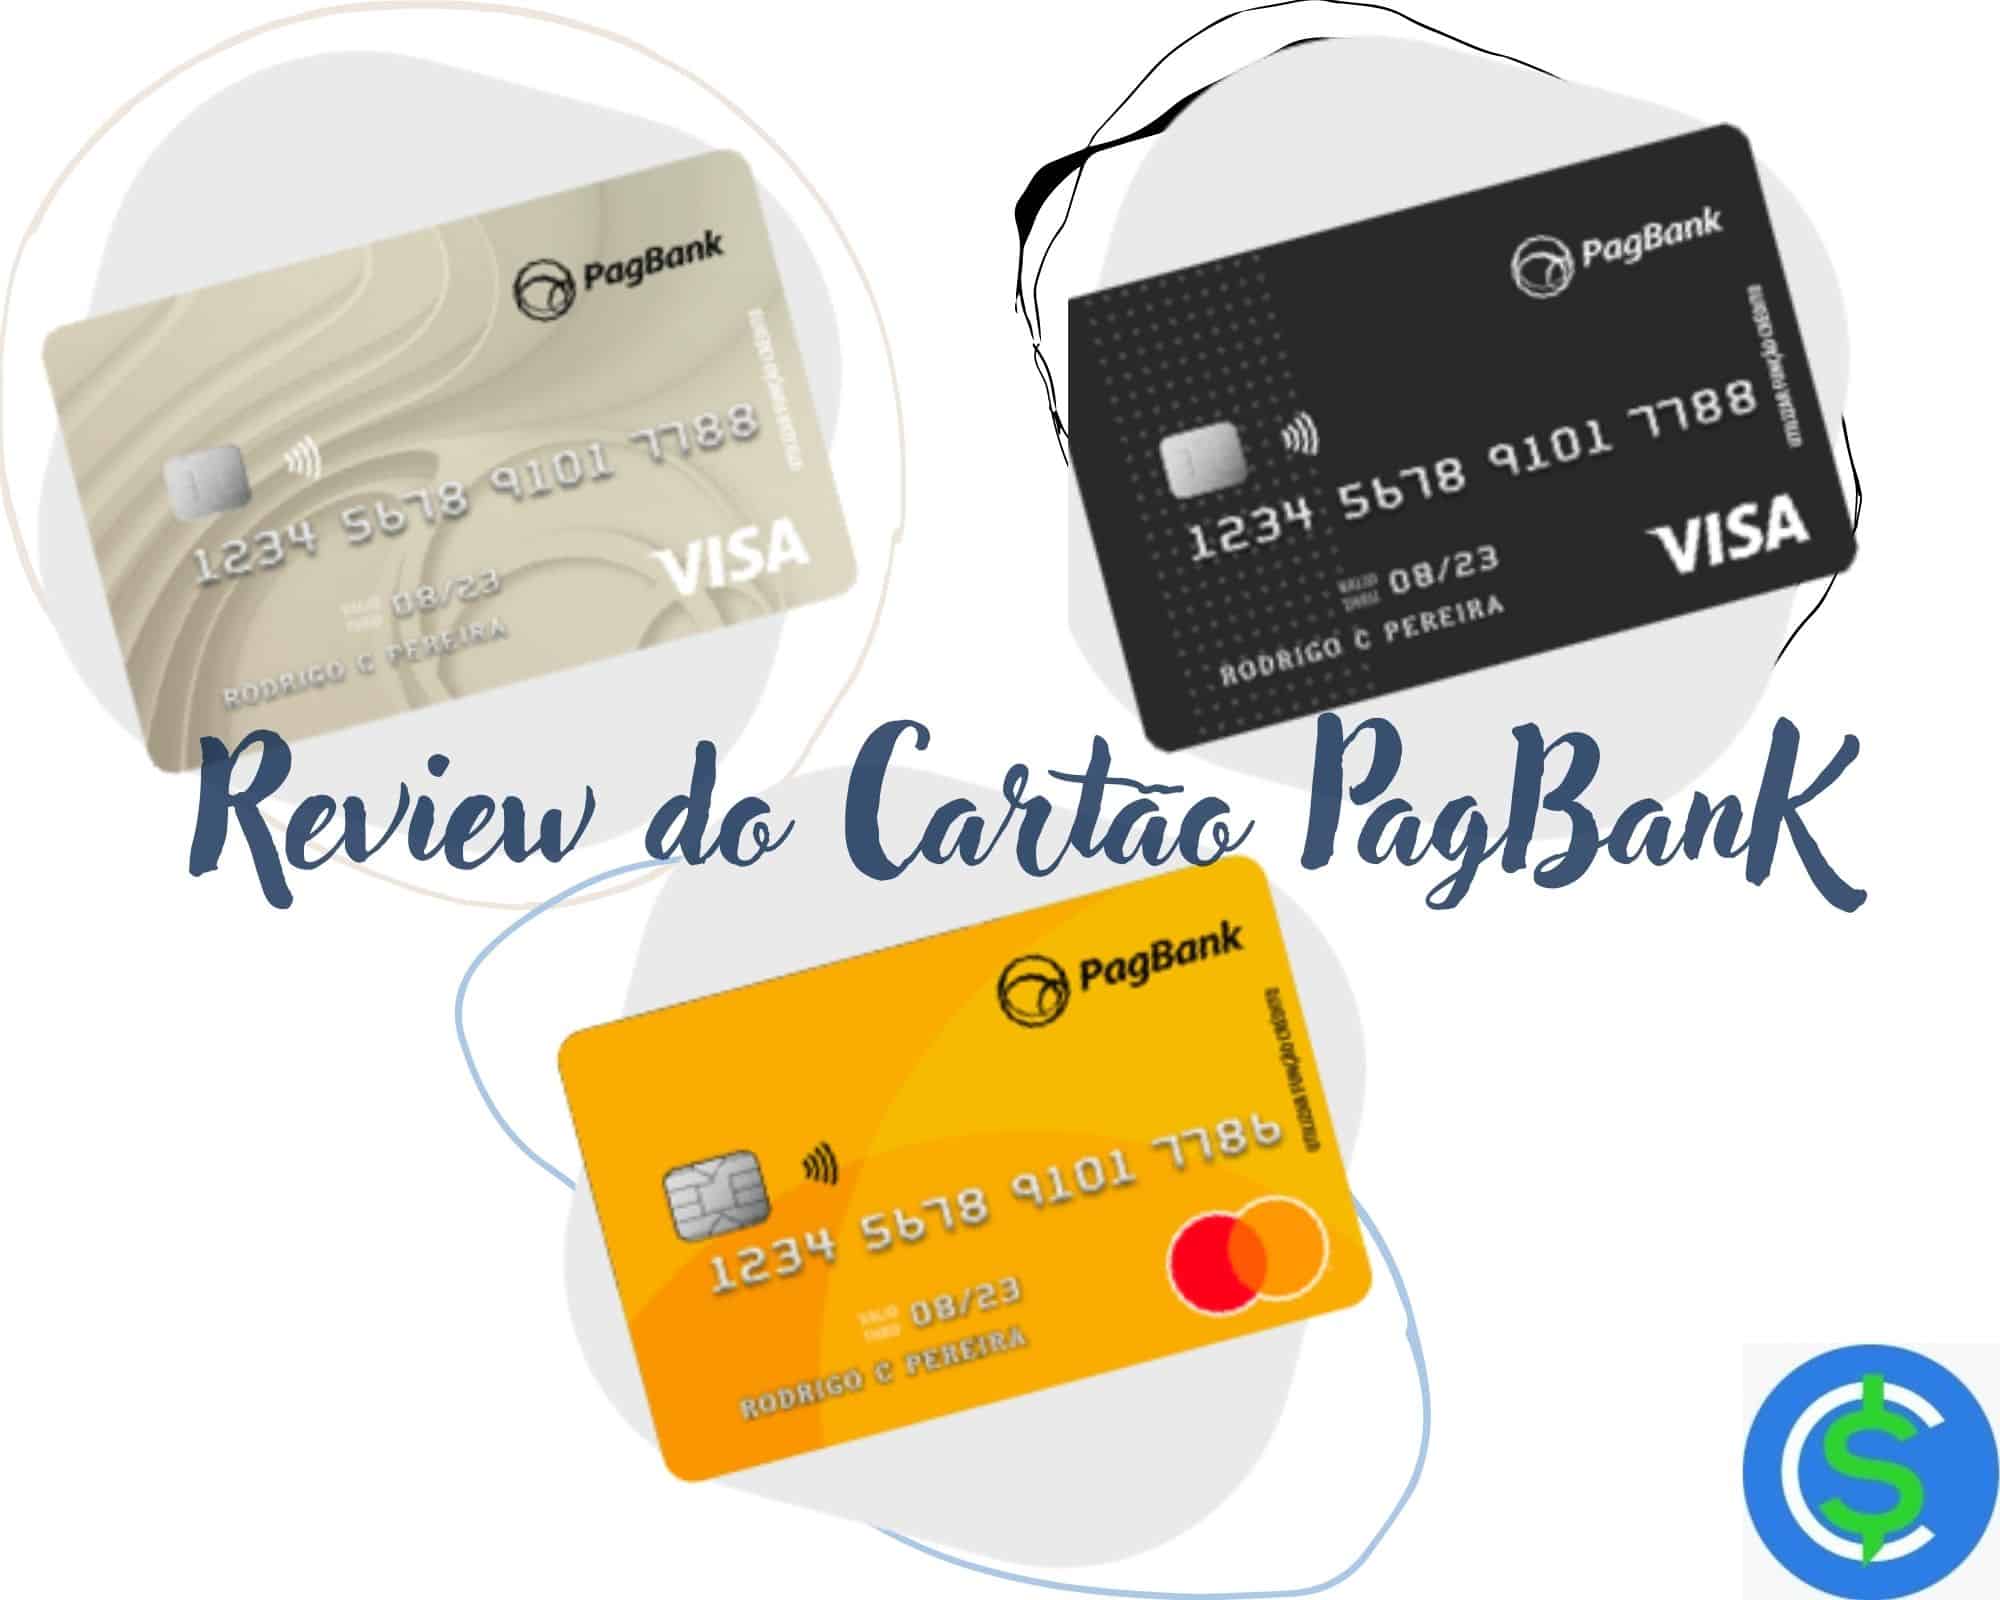 Review do Cartão PagBank